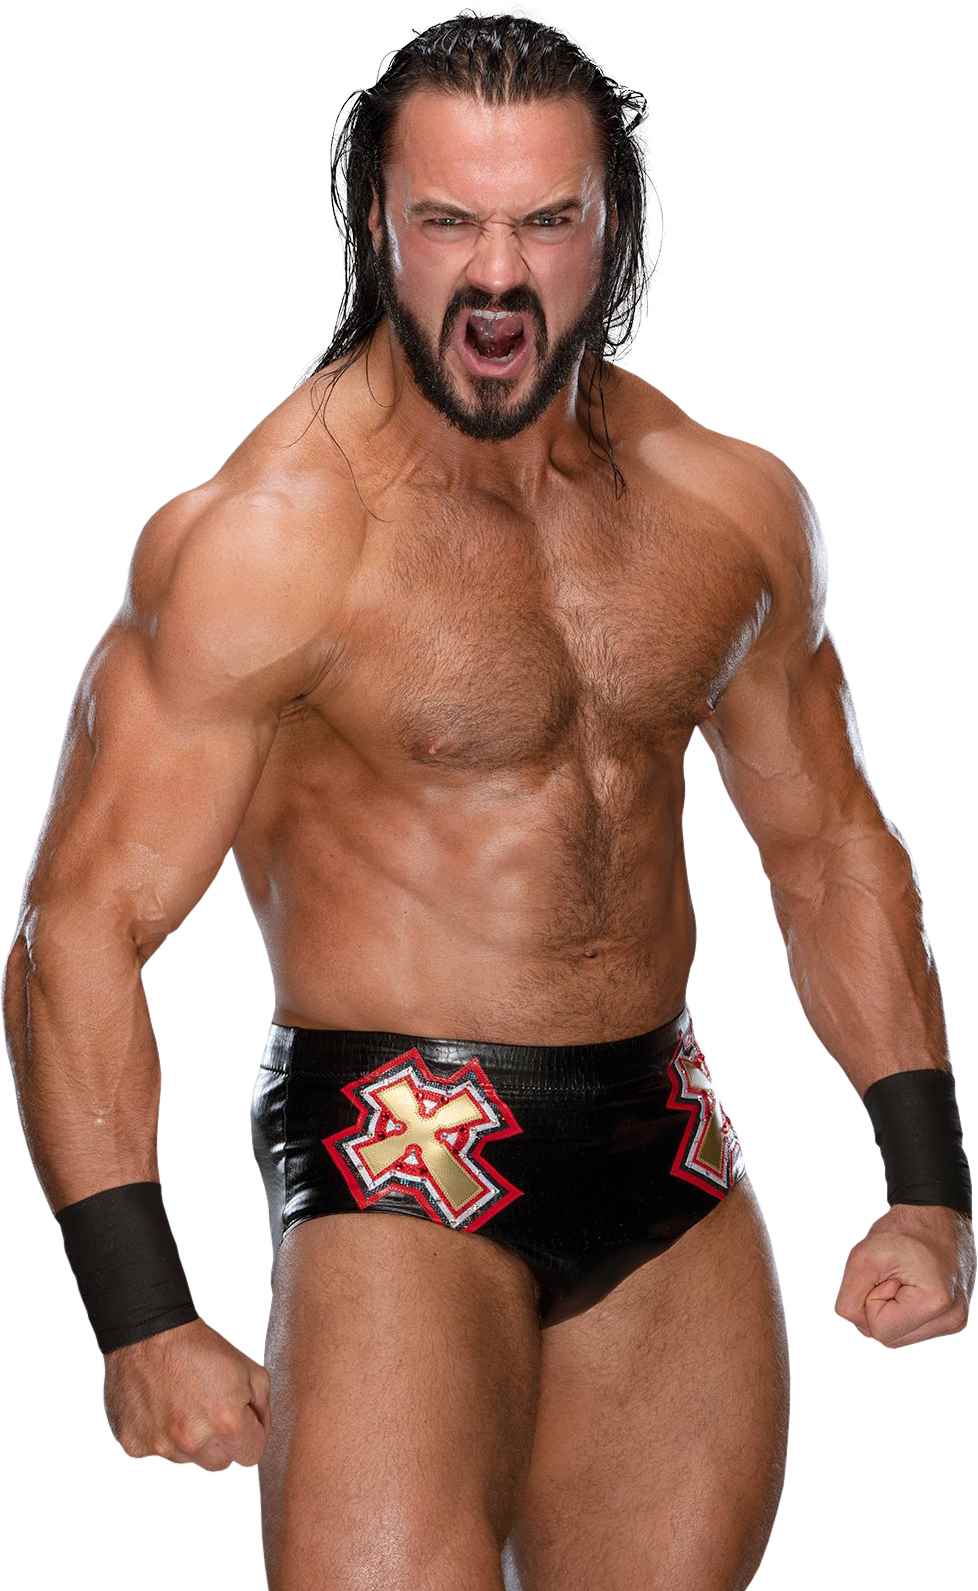 McIntyre regresará a un ring de WWE en algún momento, según Holland